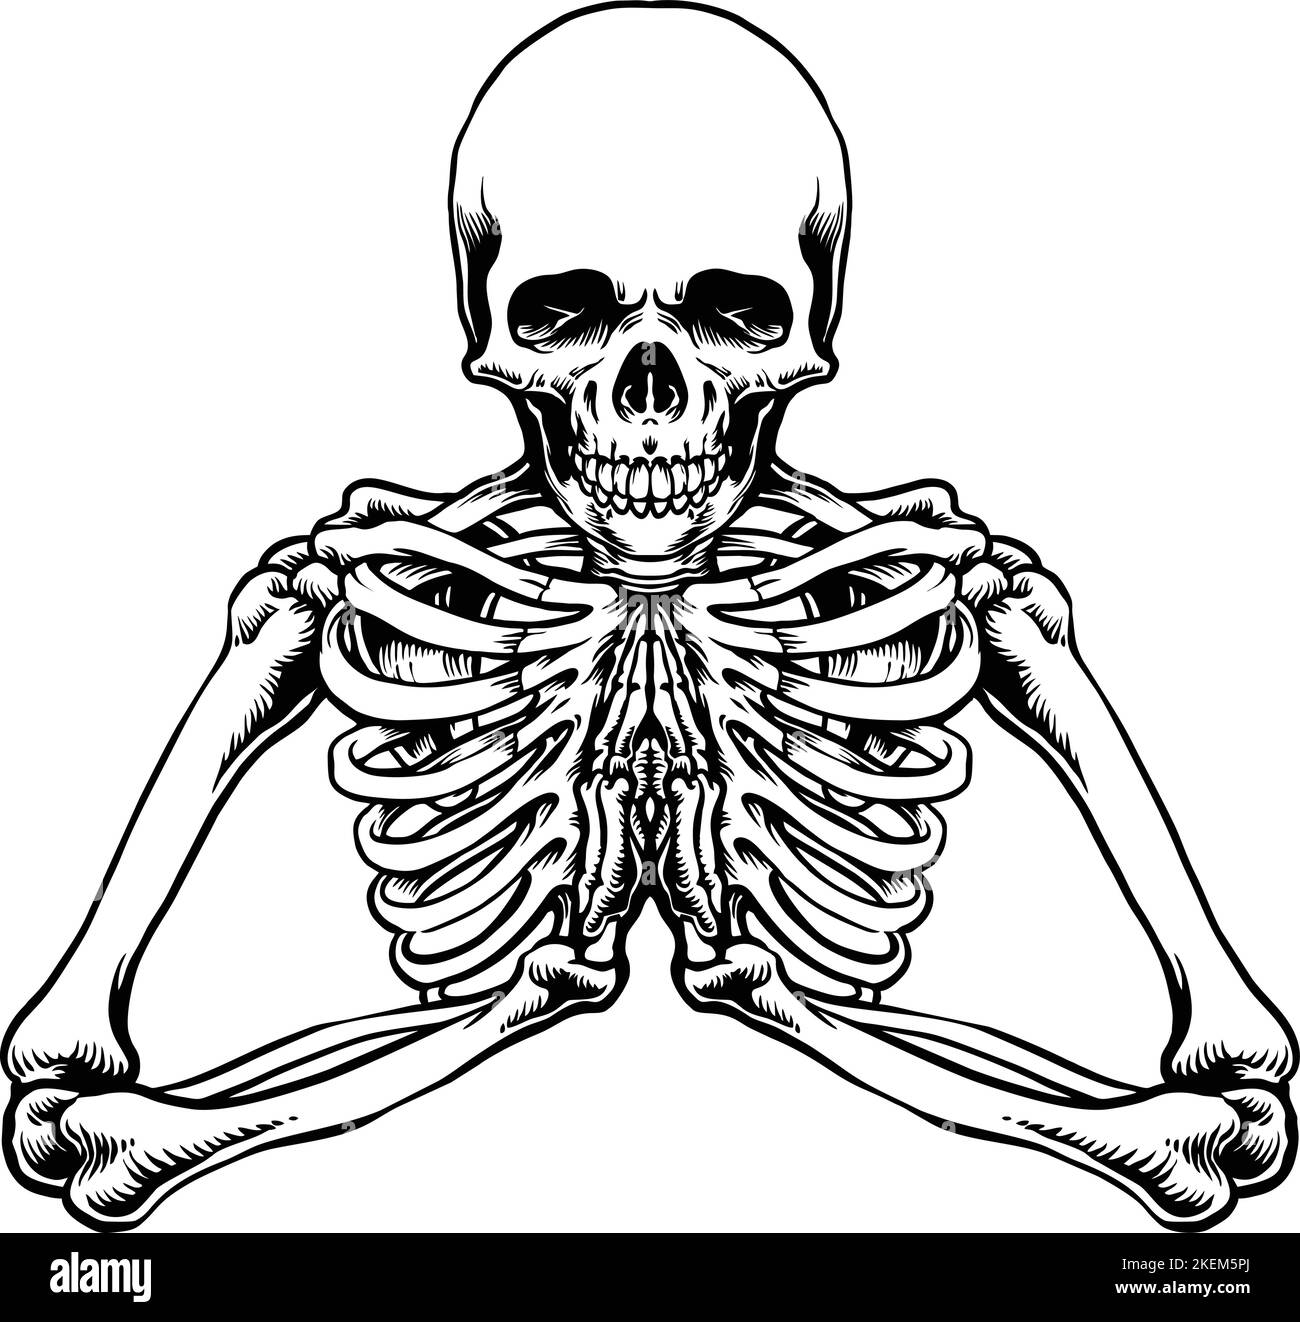 Prière Skeleton Outline Clipart illustrations vectorielles pour votre travail logo, t-shirt, autocollants et étiquettes, affiche, cartes de vœux Illustration de Vecteur